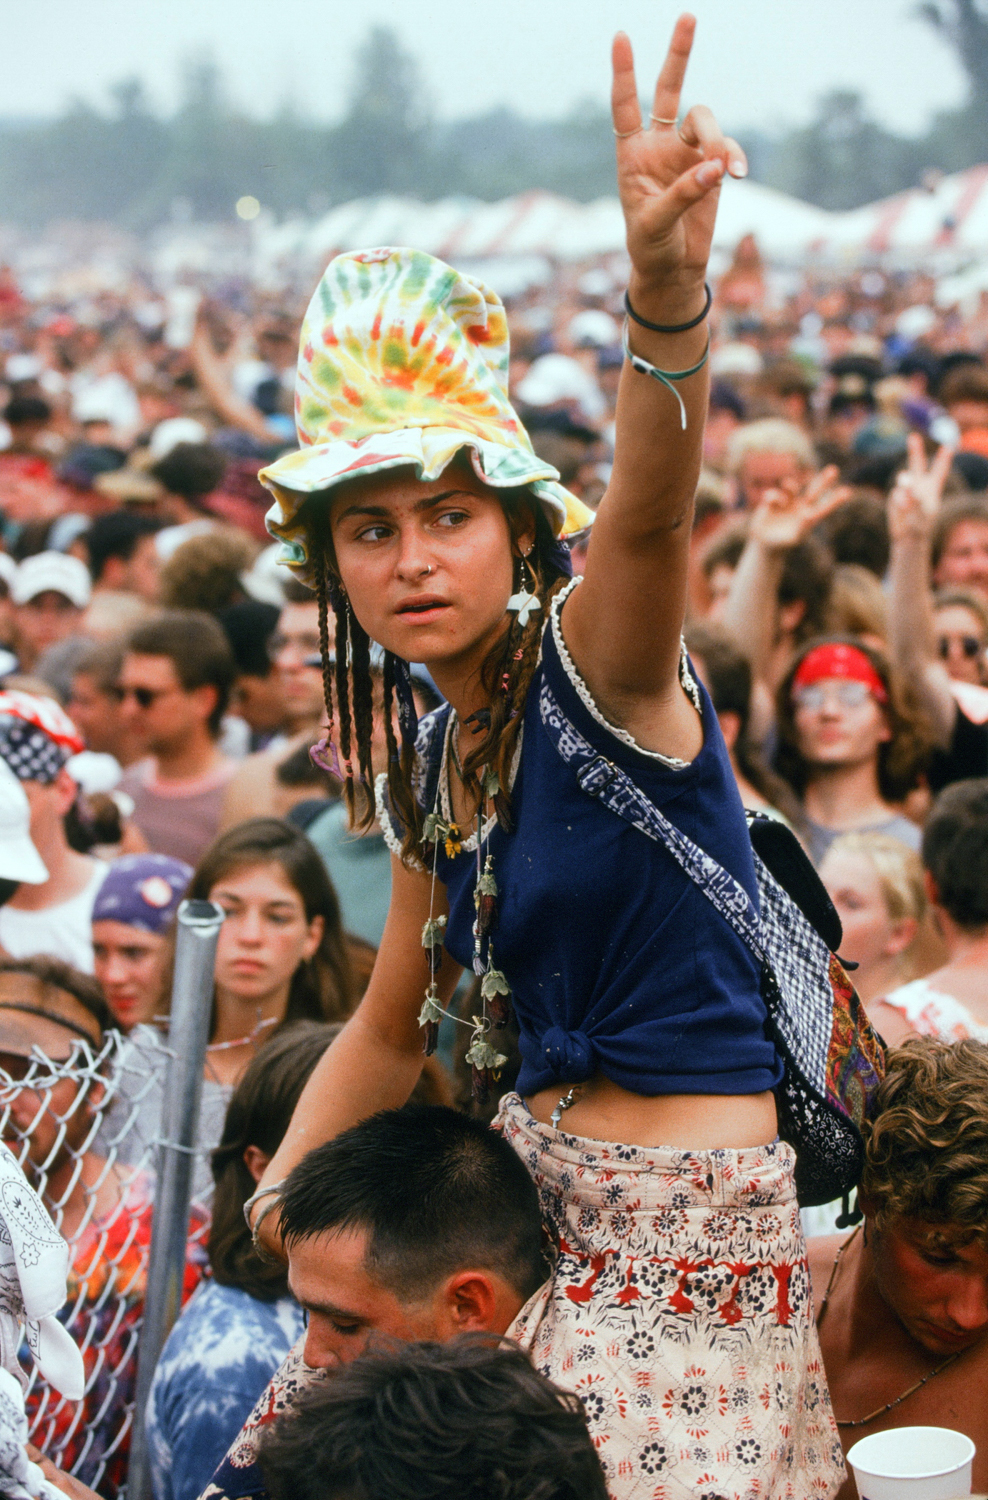 010_Woodstock-0459.jpg